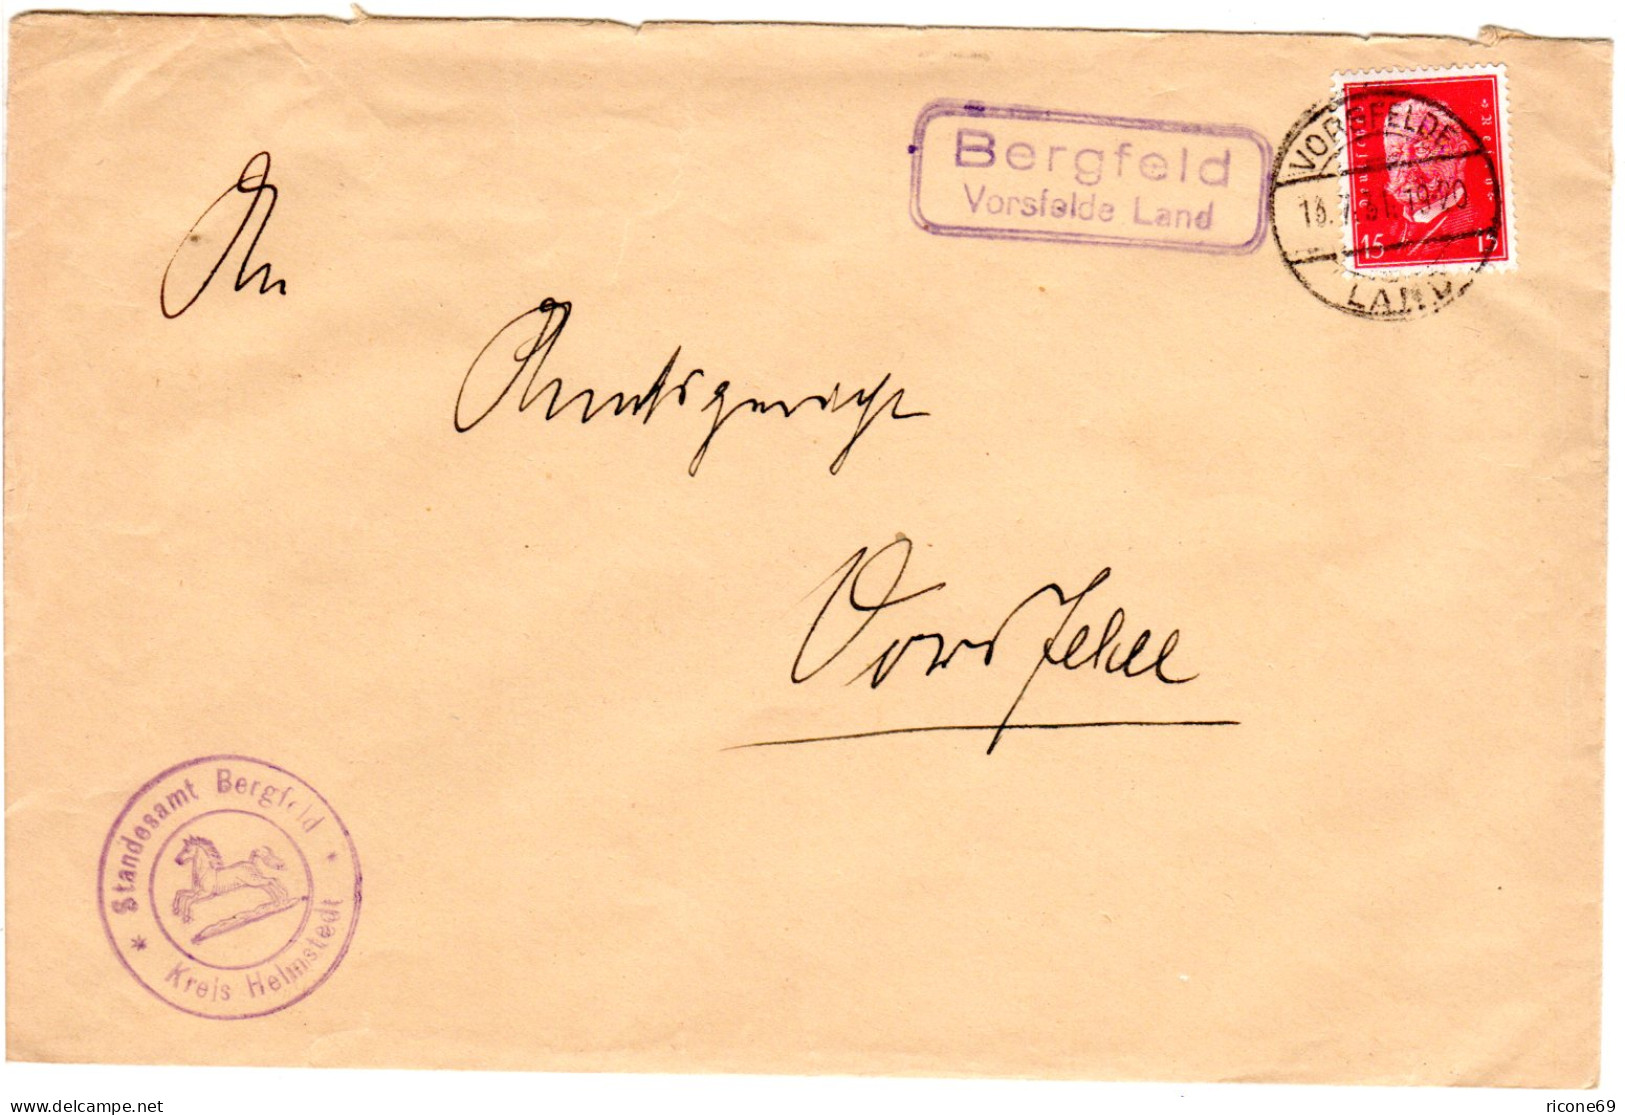 DR 1931, Landpoststpl. BERGFELD Vorsfelde Land Auf Brief M. 15 Pf. - Briefe U. Dokumente